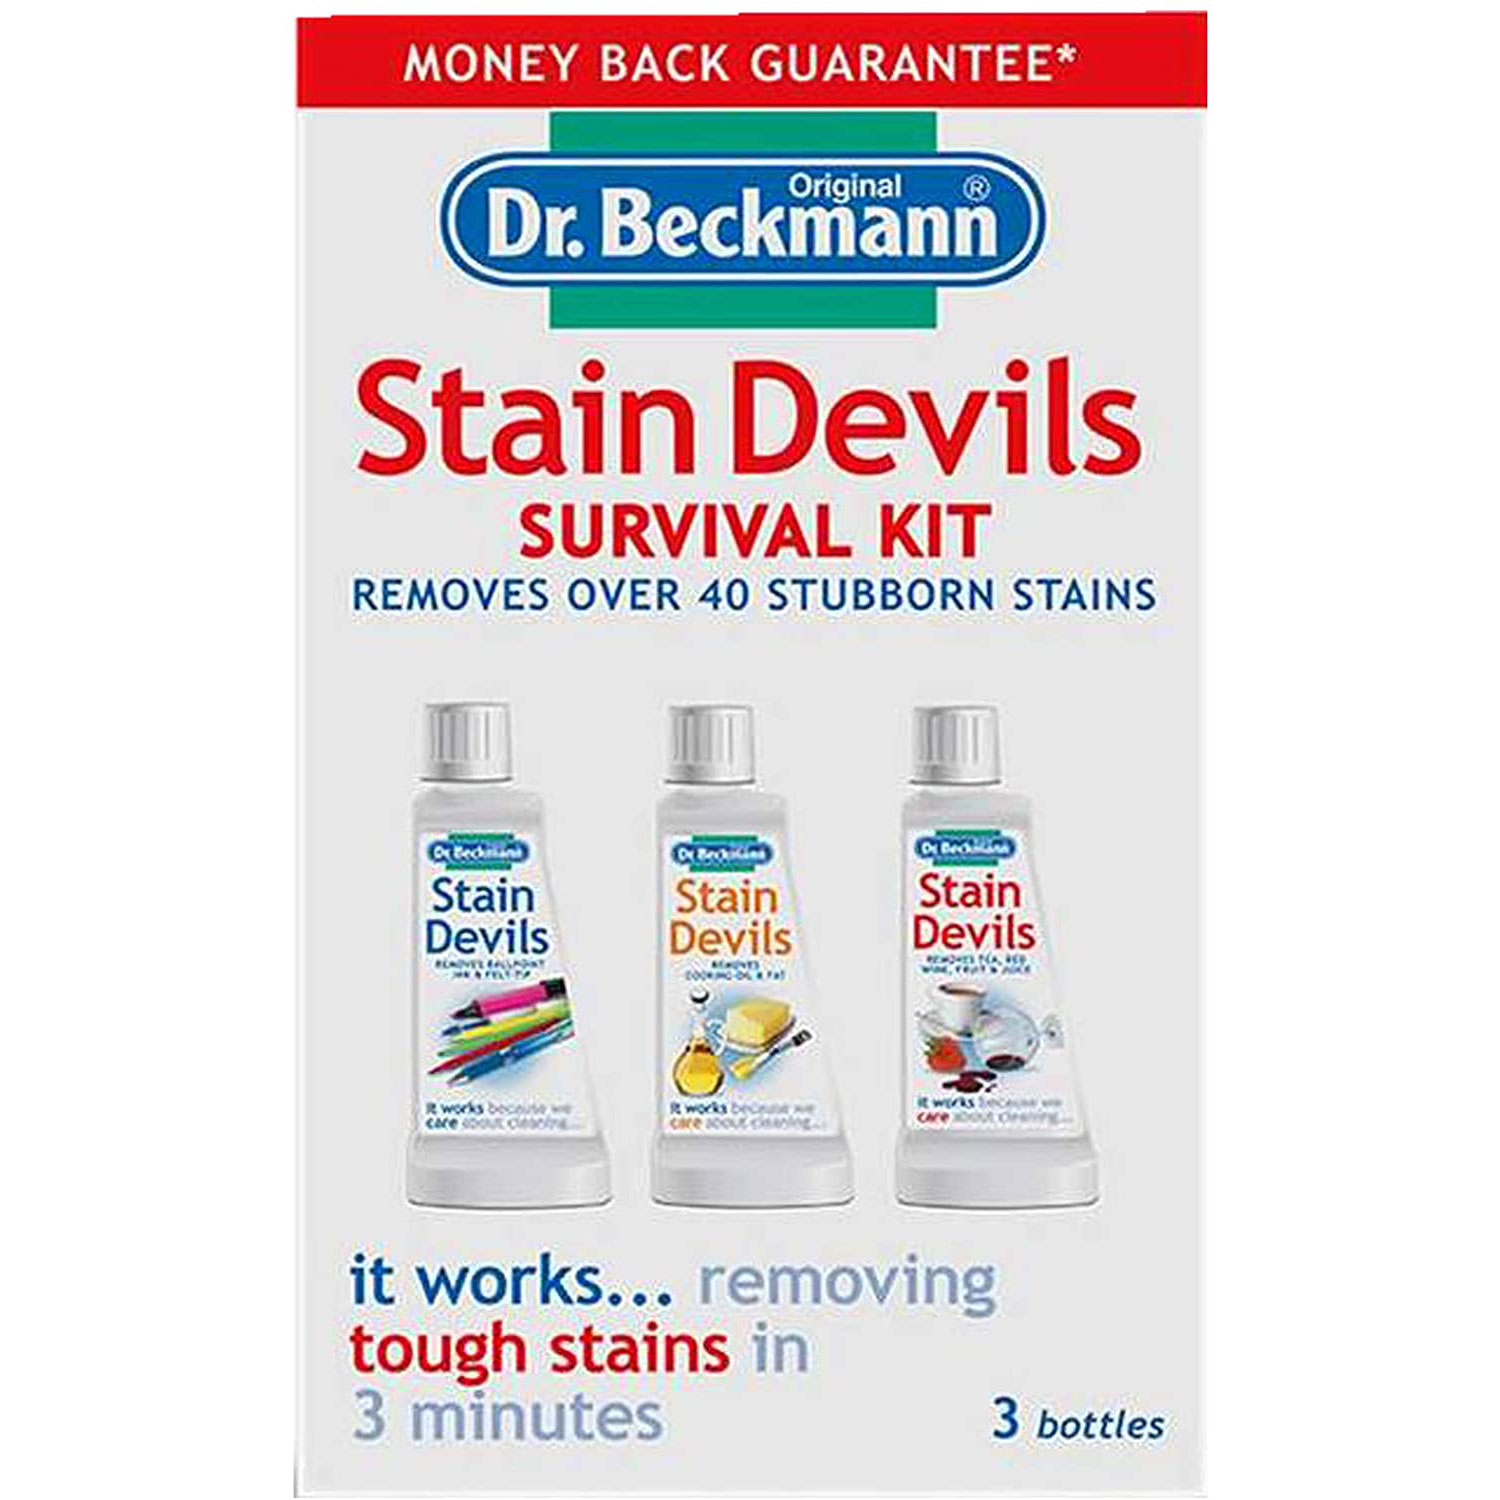 Buy Dr. Beckmann Stain Devils Survival Kit 3x50 ml